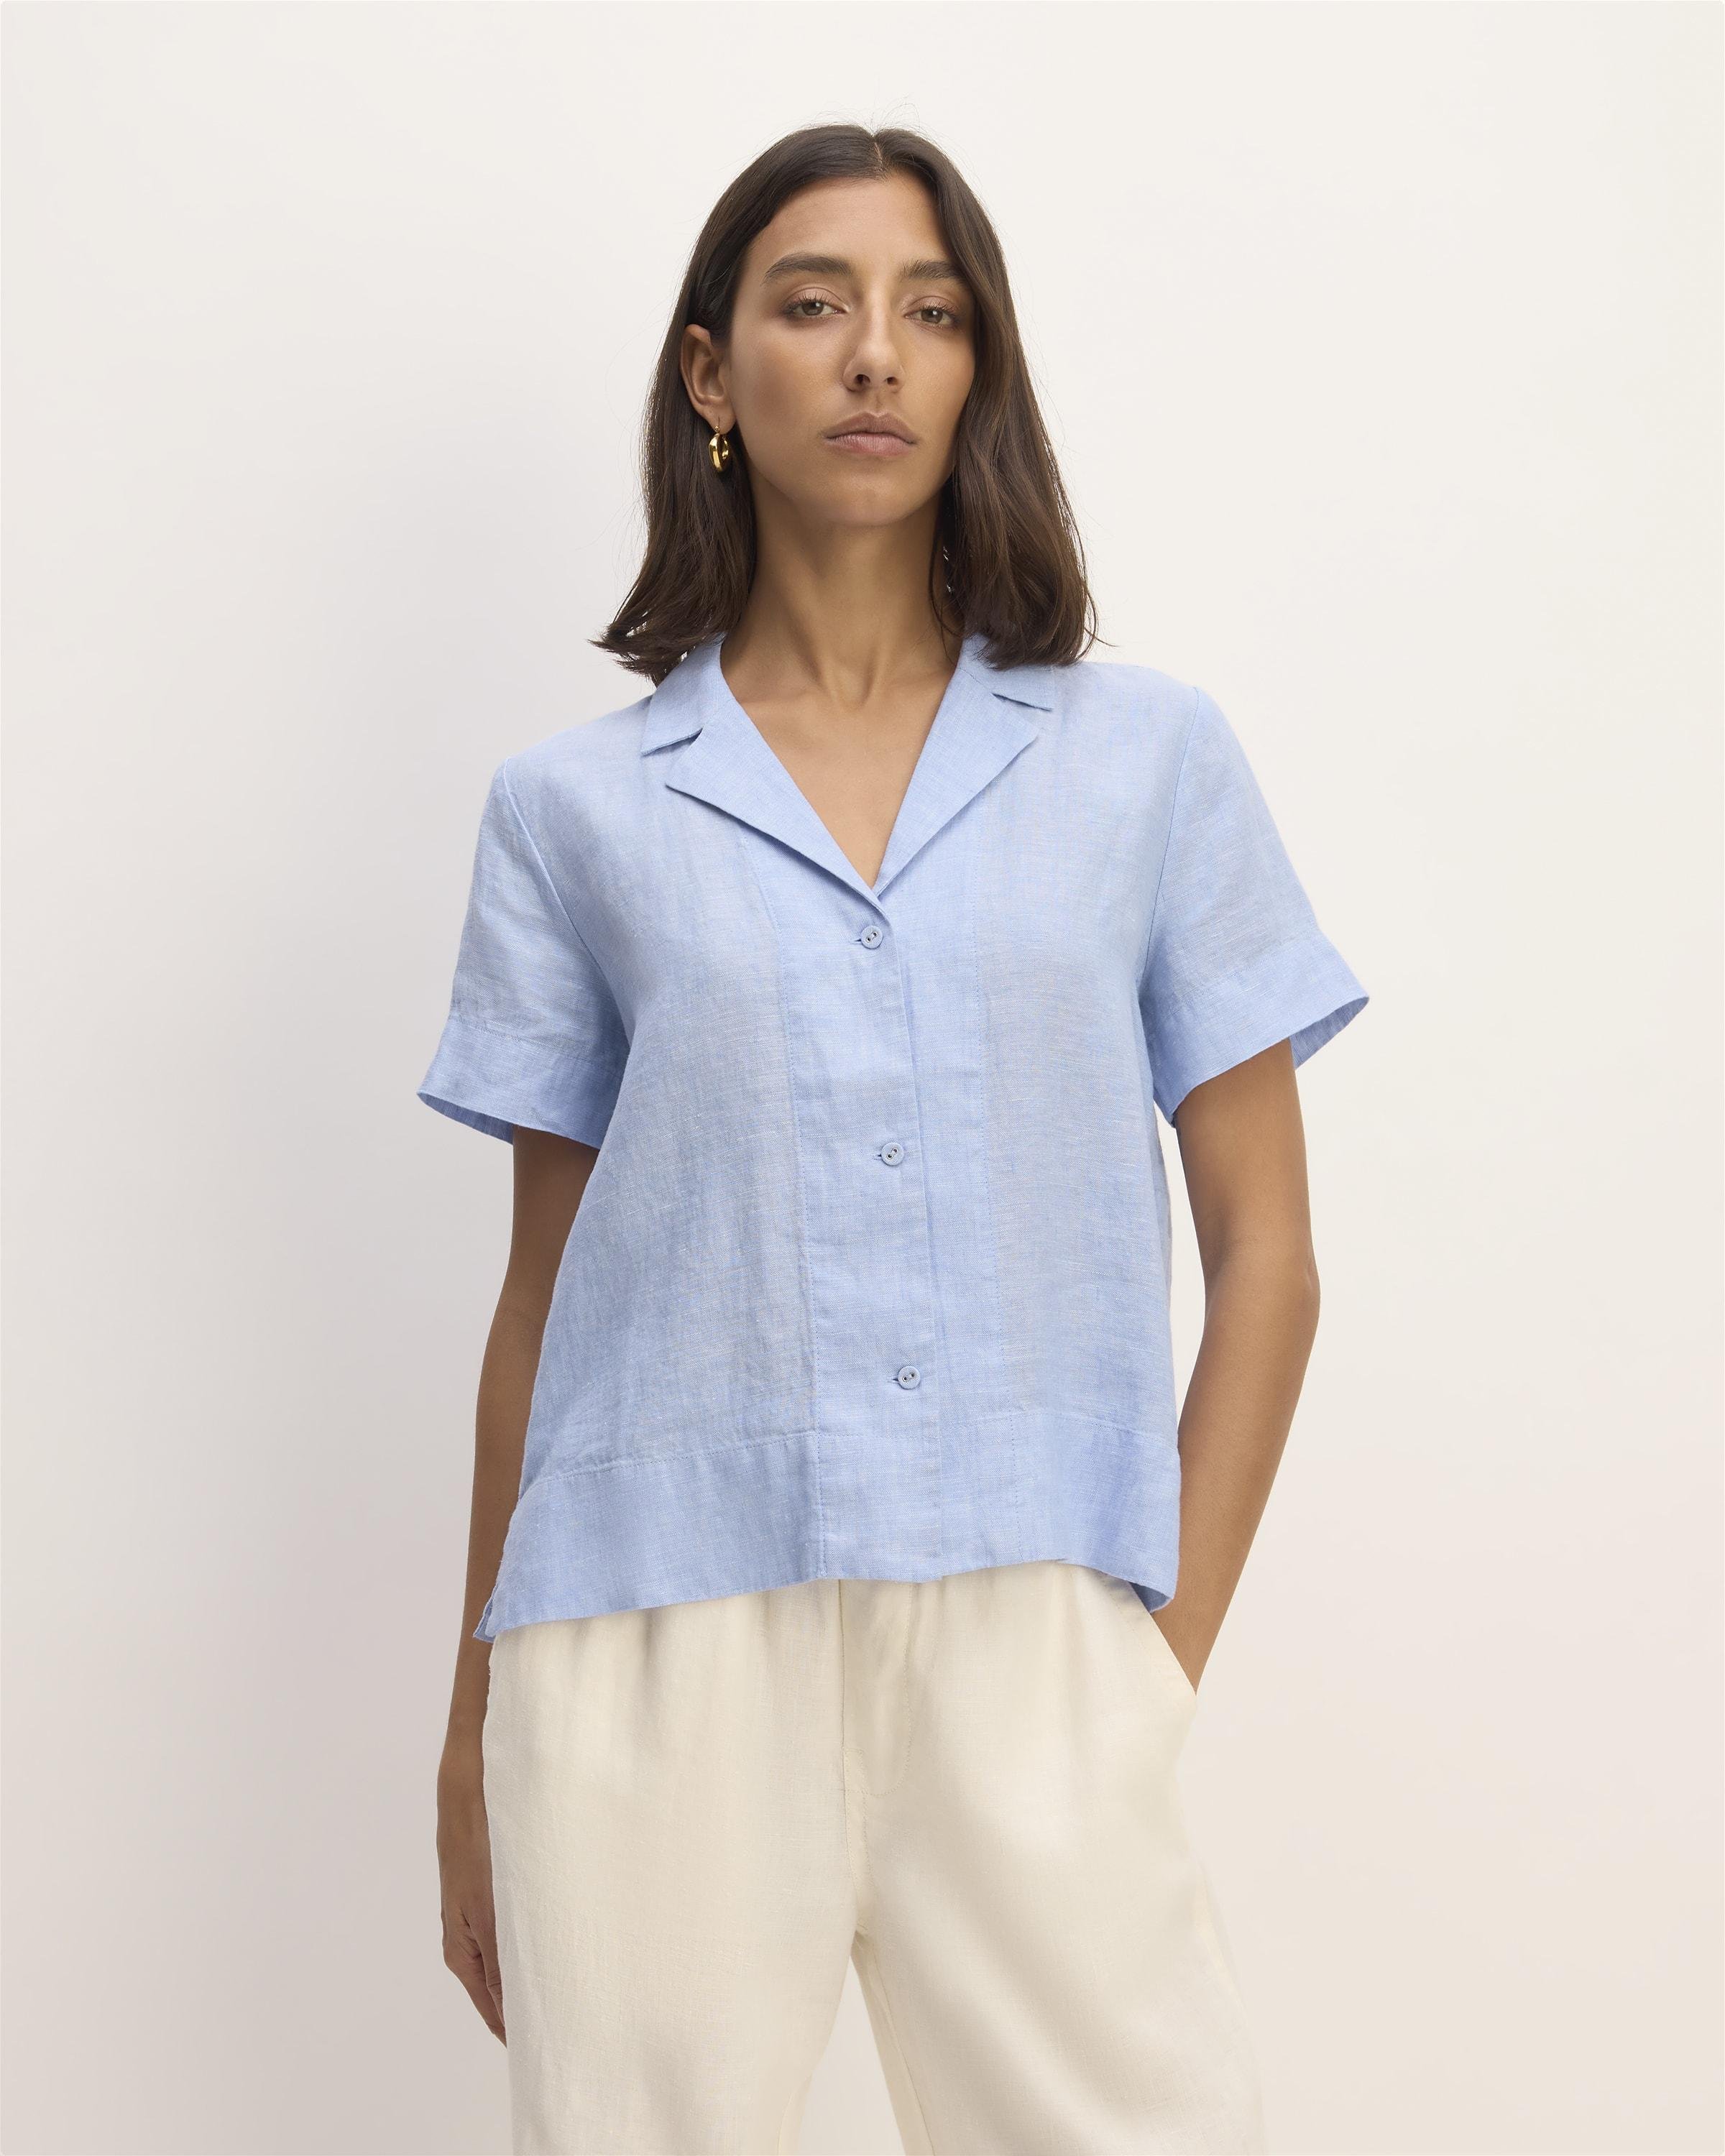 The Linen Short-Sleeve Notch Shirt by EVERLANE